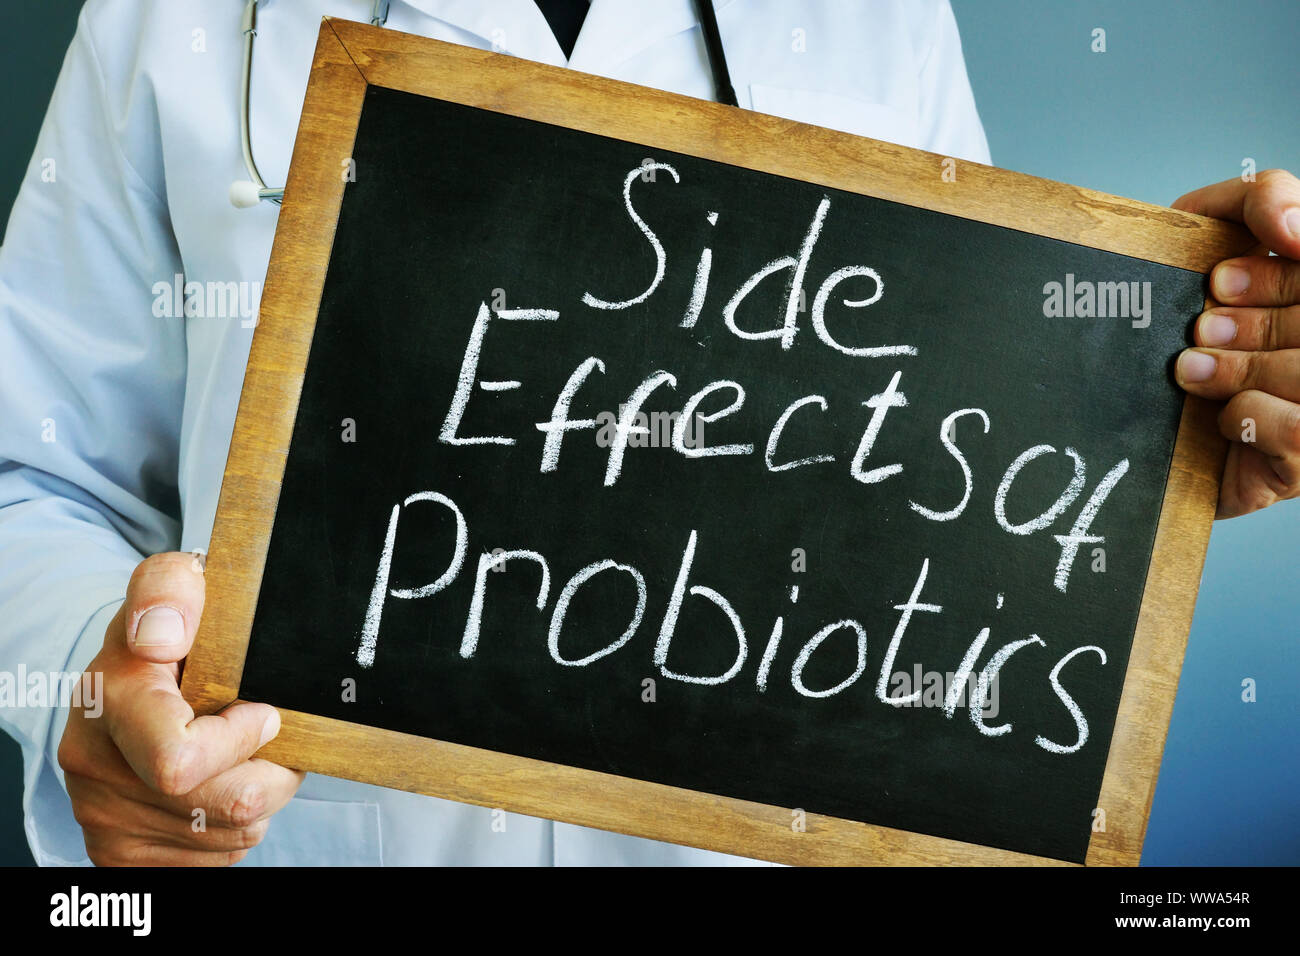 Los efectos secundarios de los Probióticos escrito en una pizarra. Foto de stock